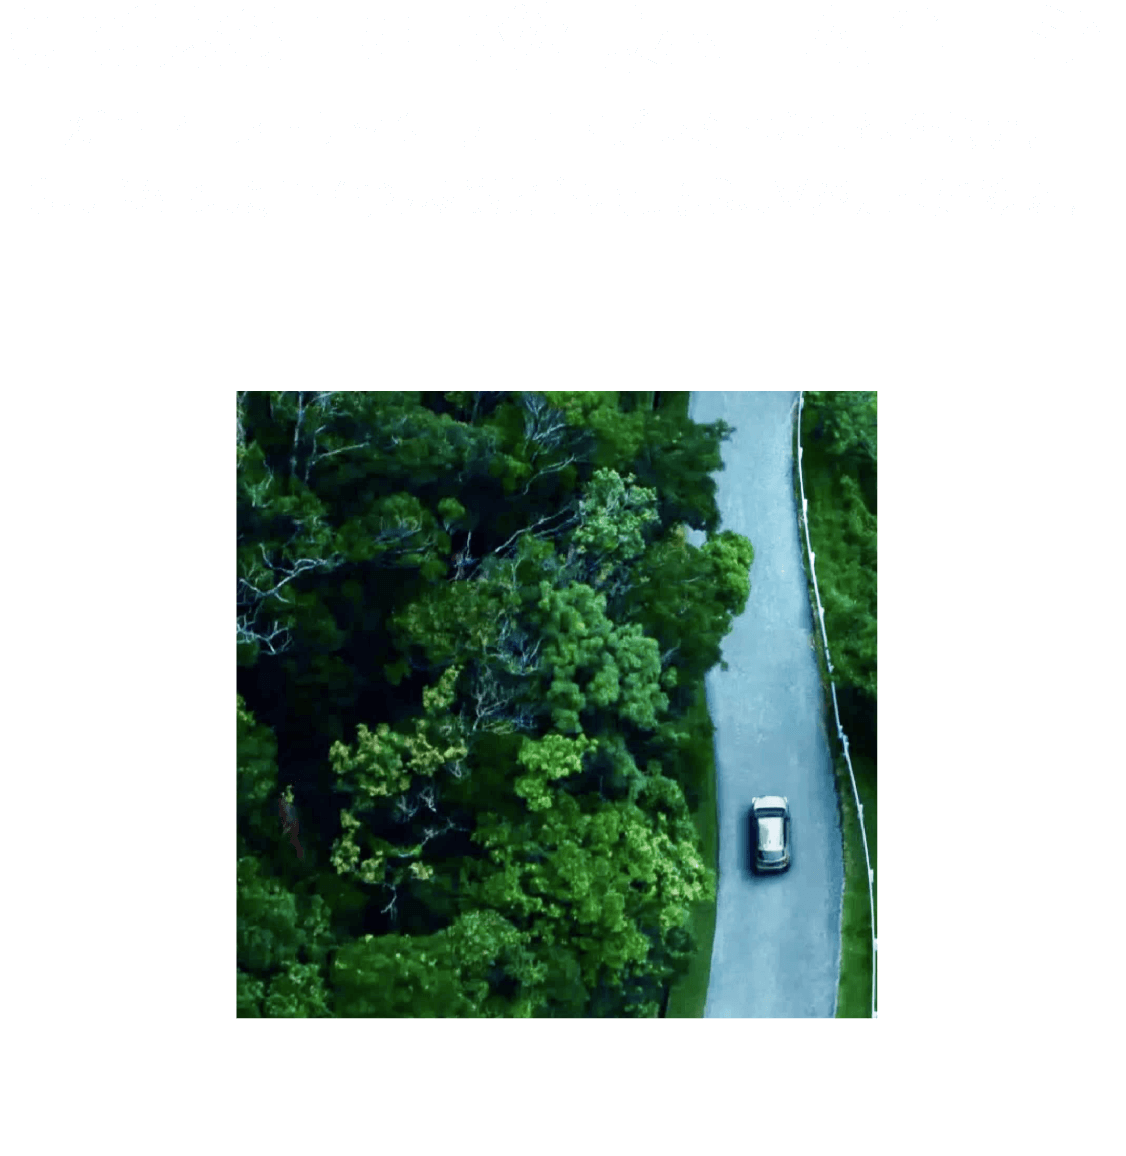 CROSSTREK公式ホームページ。新型クロストレック ワールドプレミアの情報を公開。SUBARU新時代の象徴ともいえるSUVが走り始める。